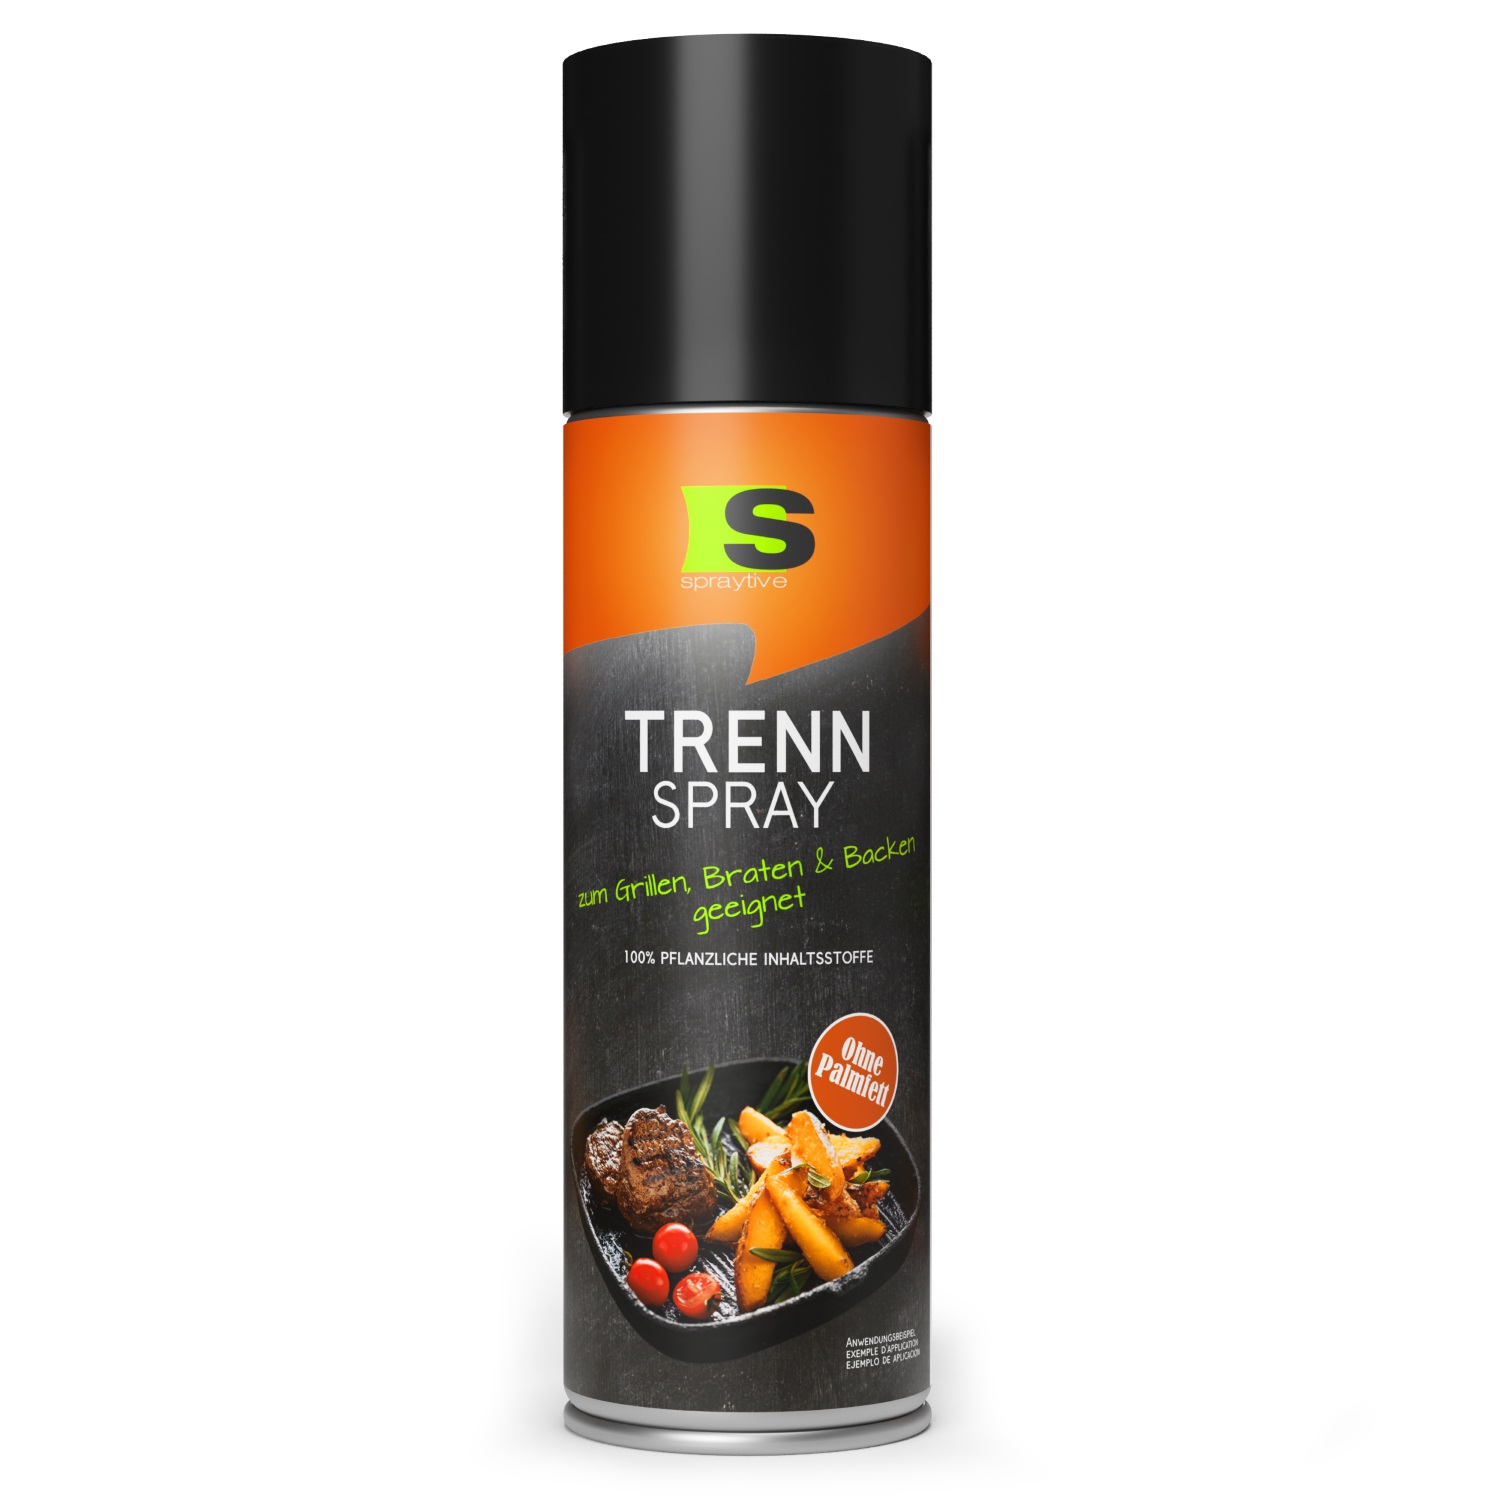 Spraytive 400ml Trennspray - Anti-Haft-Spray zum Grillen, Braten & Backen